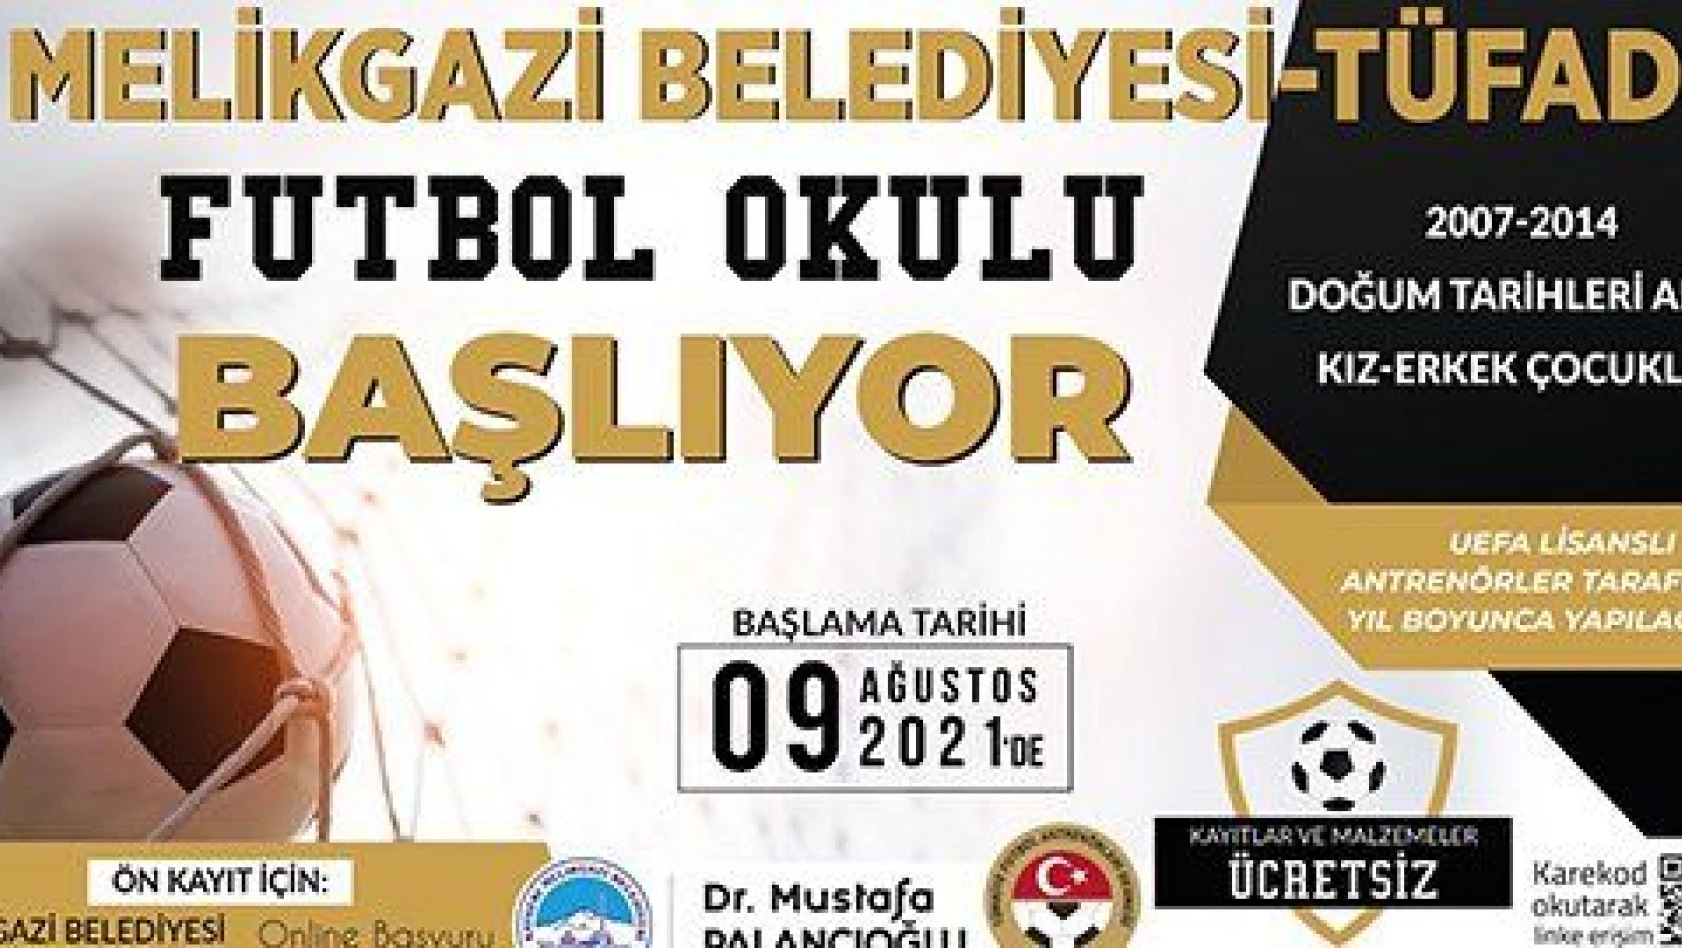 Melikgazi Belediyesi-TÜFAD Futbol Okulu başlıyor